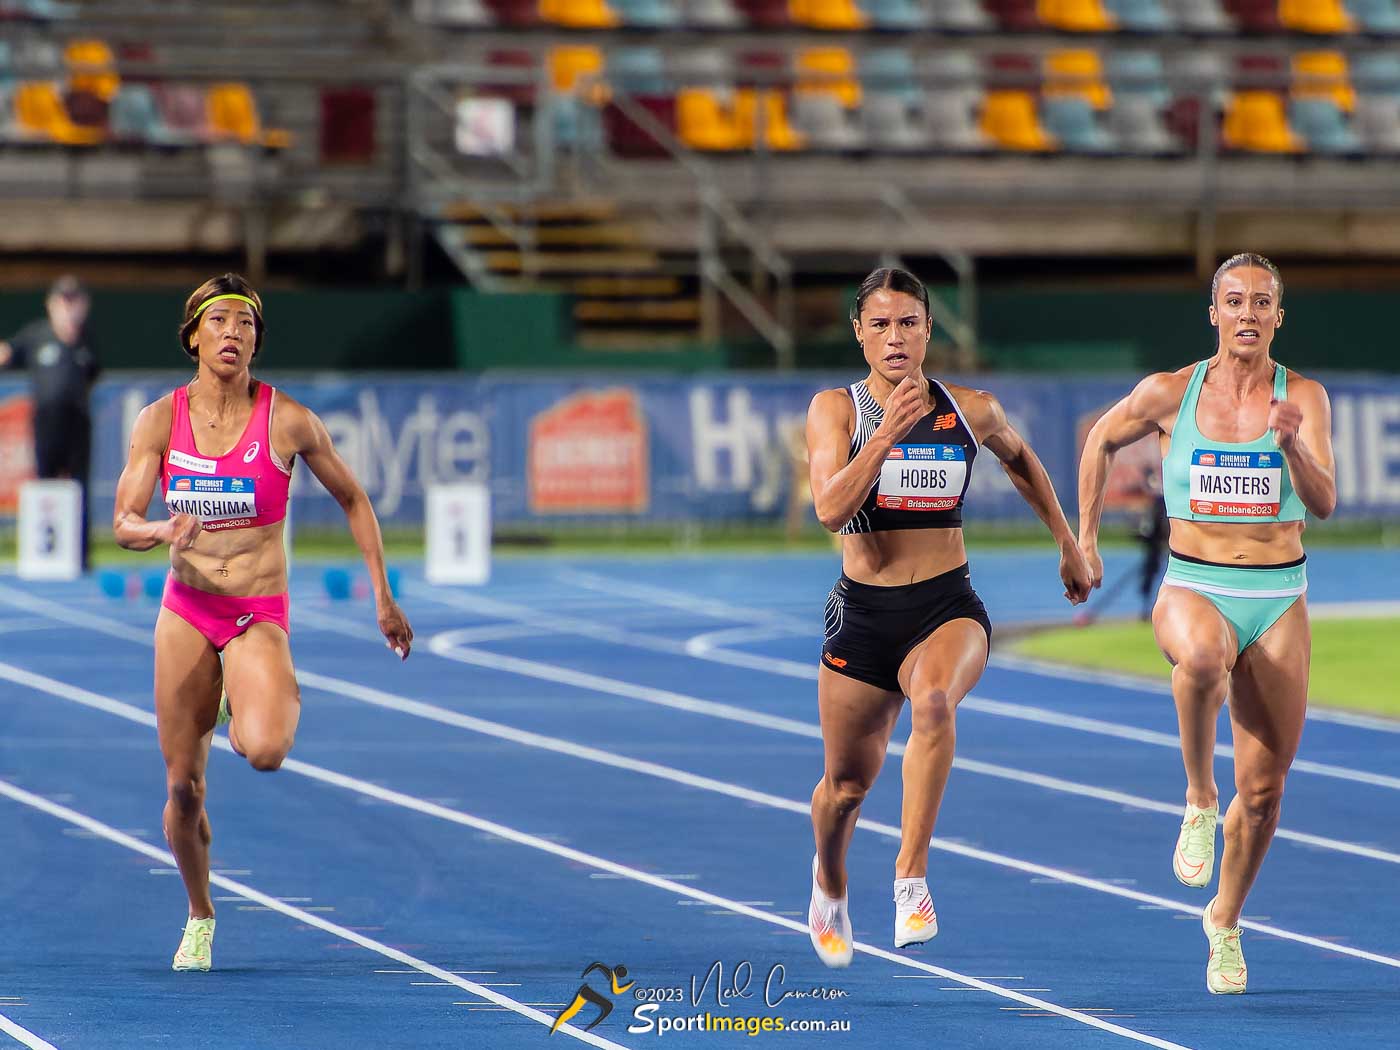 Kimishima, Zoe Hobbs, Bree Masters, Women's 100m A Race